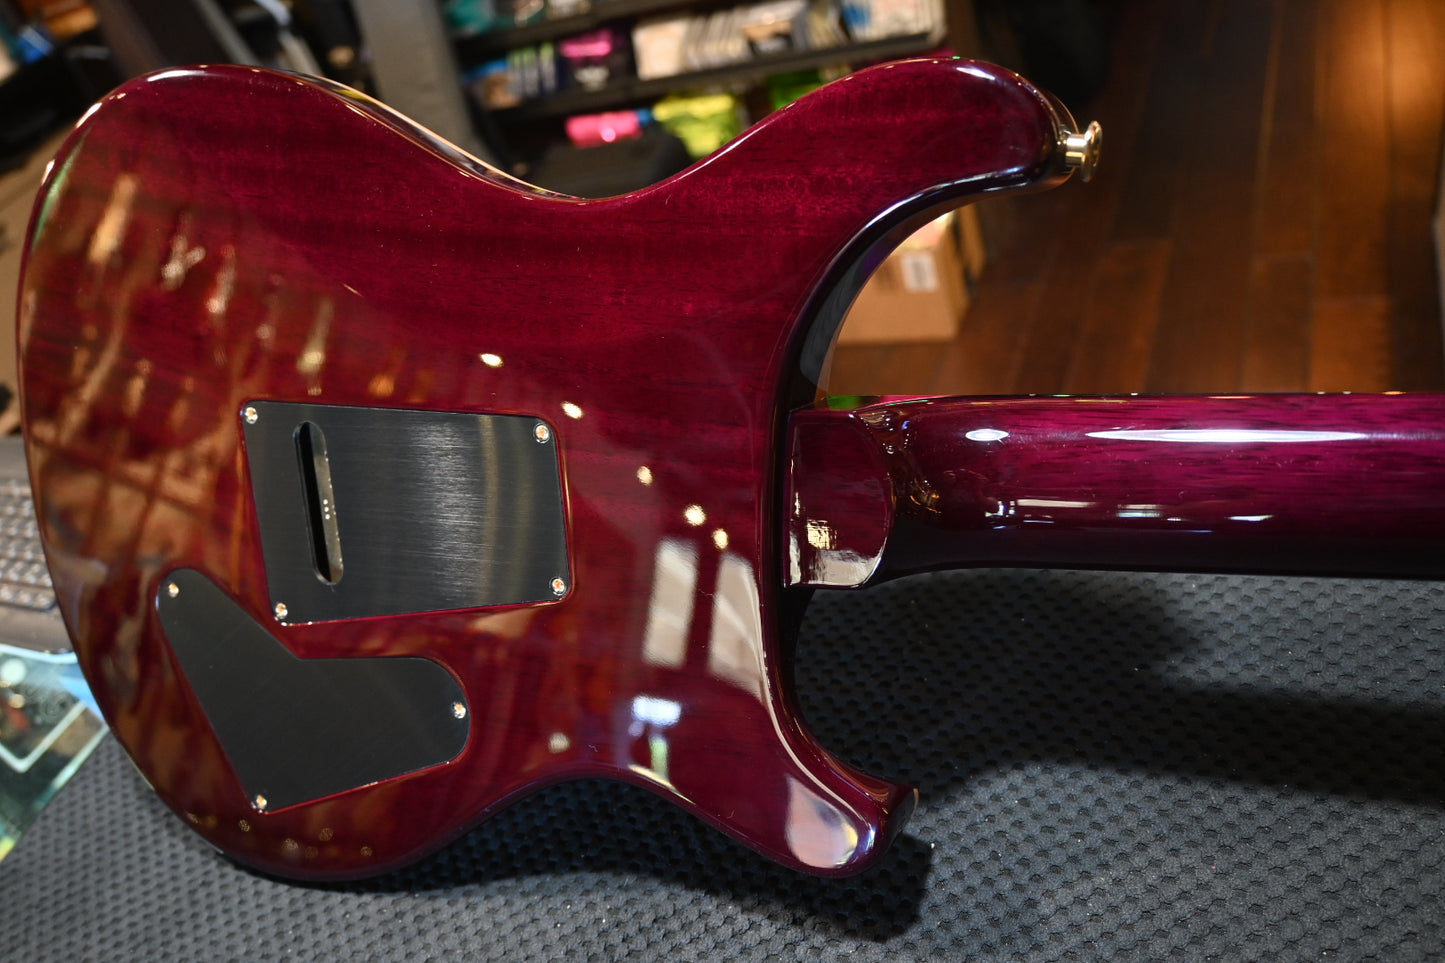 PRS Wood Library Custom 24 Lefty 10-Top One Piece Quilt - Aquableux Purple Burst Guitar #7969 - Danville Music